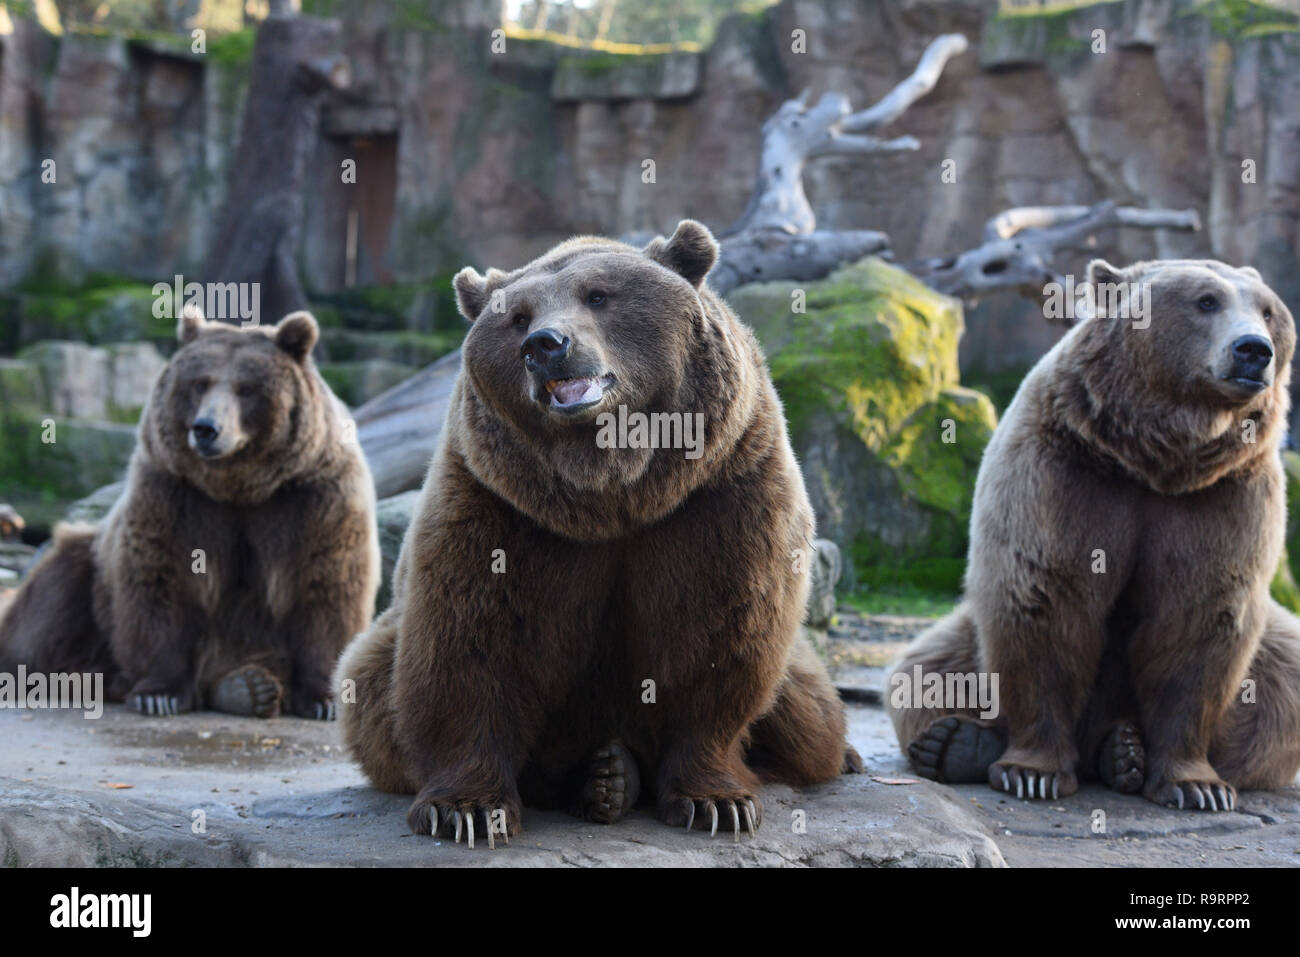 Madrid, Madrid, Spanien. 27 Dez, 2018. Drei Braunbären gesehen Warten auf das Essen im Zoo Madrid. Der Braunbär (Ursus arctos) ist die größte terrestrische Fleischesser. In der Wildnis es über viel im nördlichen Eurasien und Nordamerika verteilt wird. Es bleibt als Least Concern Arten von der IUCN mit einer Bevölkerung von etwa 200.000 aufgeführt. Quelle: John milner/SOPA Images/ZUMA Draht/Alamy leben Nachrichten Stockfoto